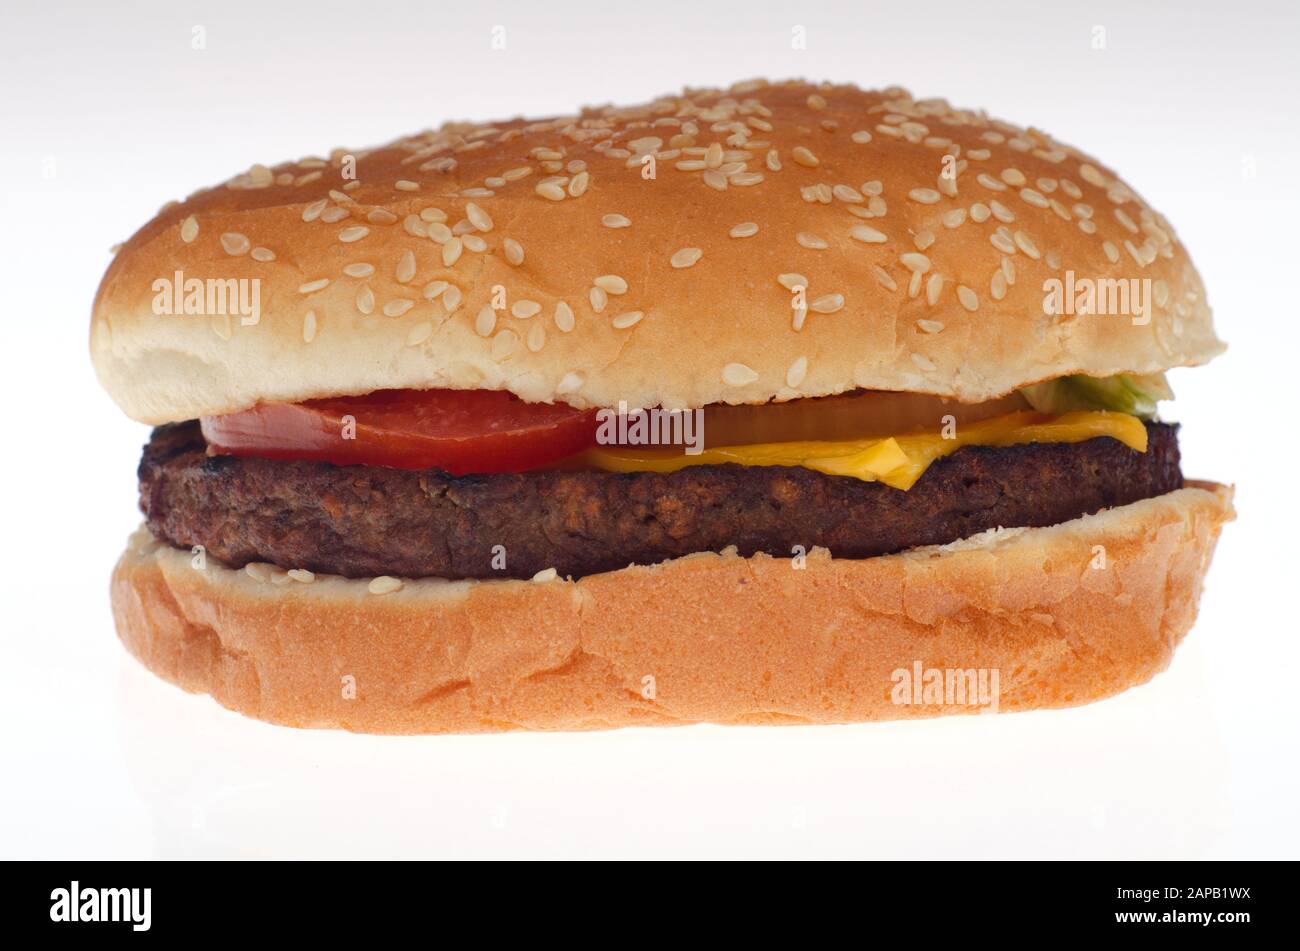 Makro-Nahaufnahme eines Burger King Impossible Whopper Plant Based Burgers mit Sesamsäumebun, Gelbkäse, Tomate auf weißem Hintergrund Stockfoto